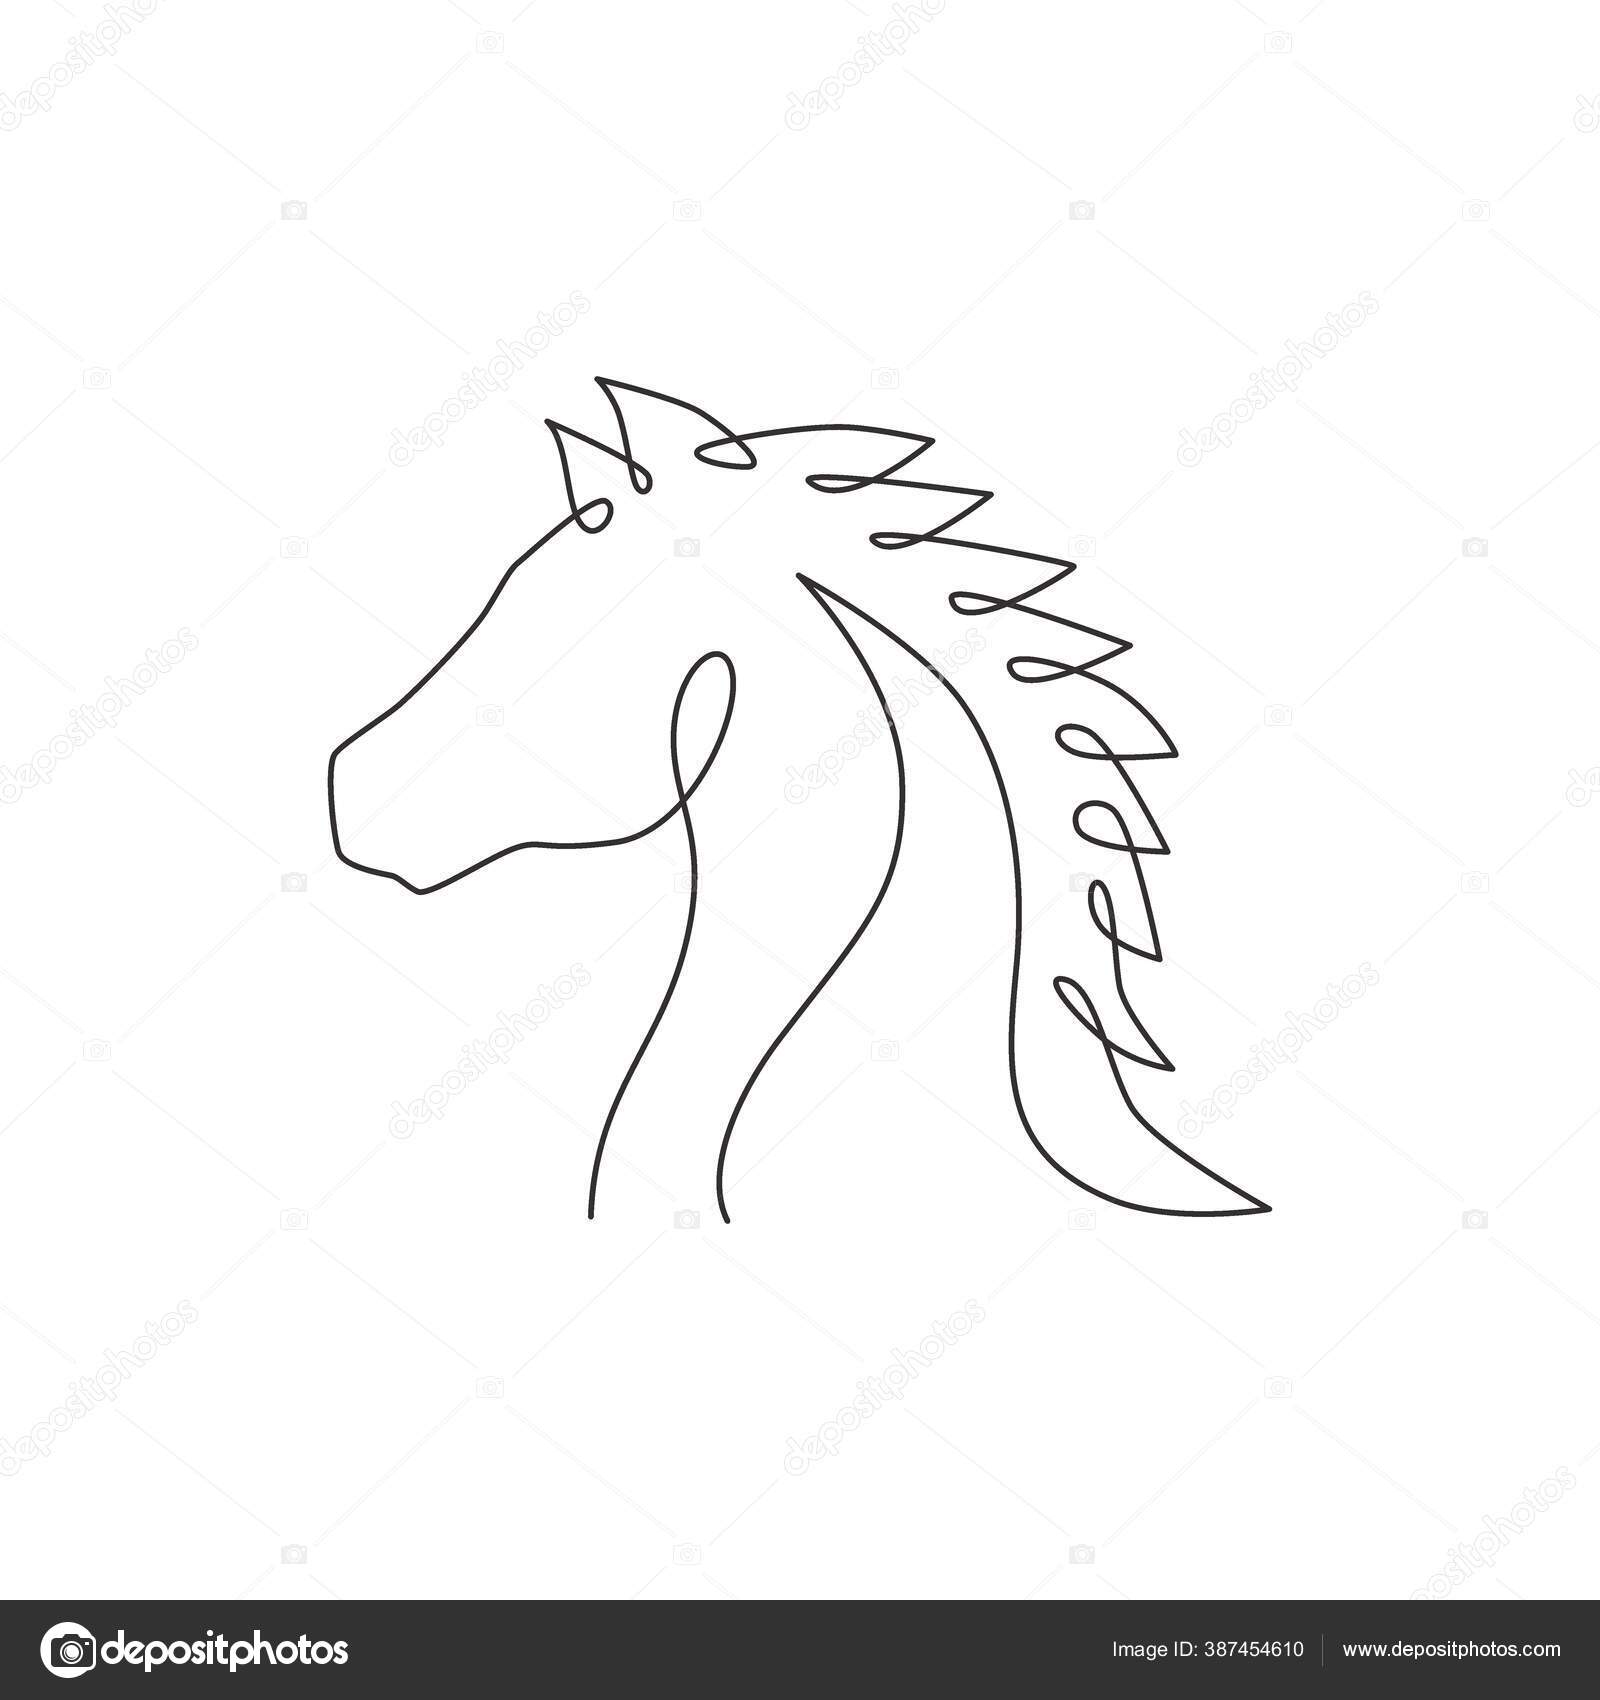 único desenho de linha contínua orgulhoso cavalo branco anda graciosamente  com seu casco dianteiro para a